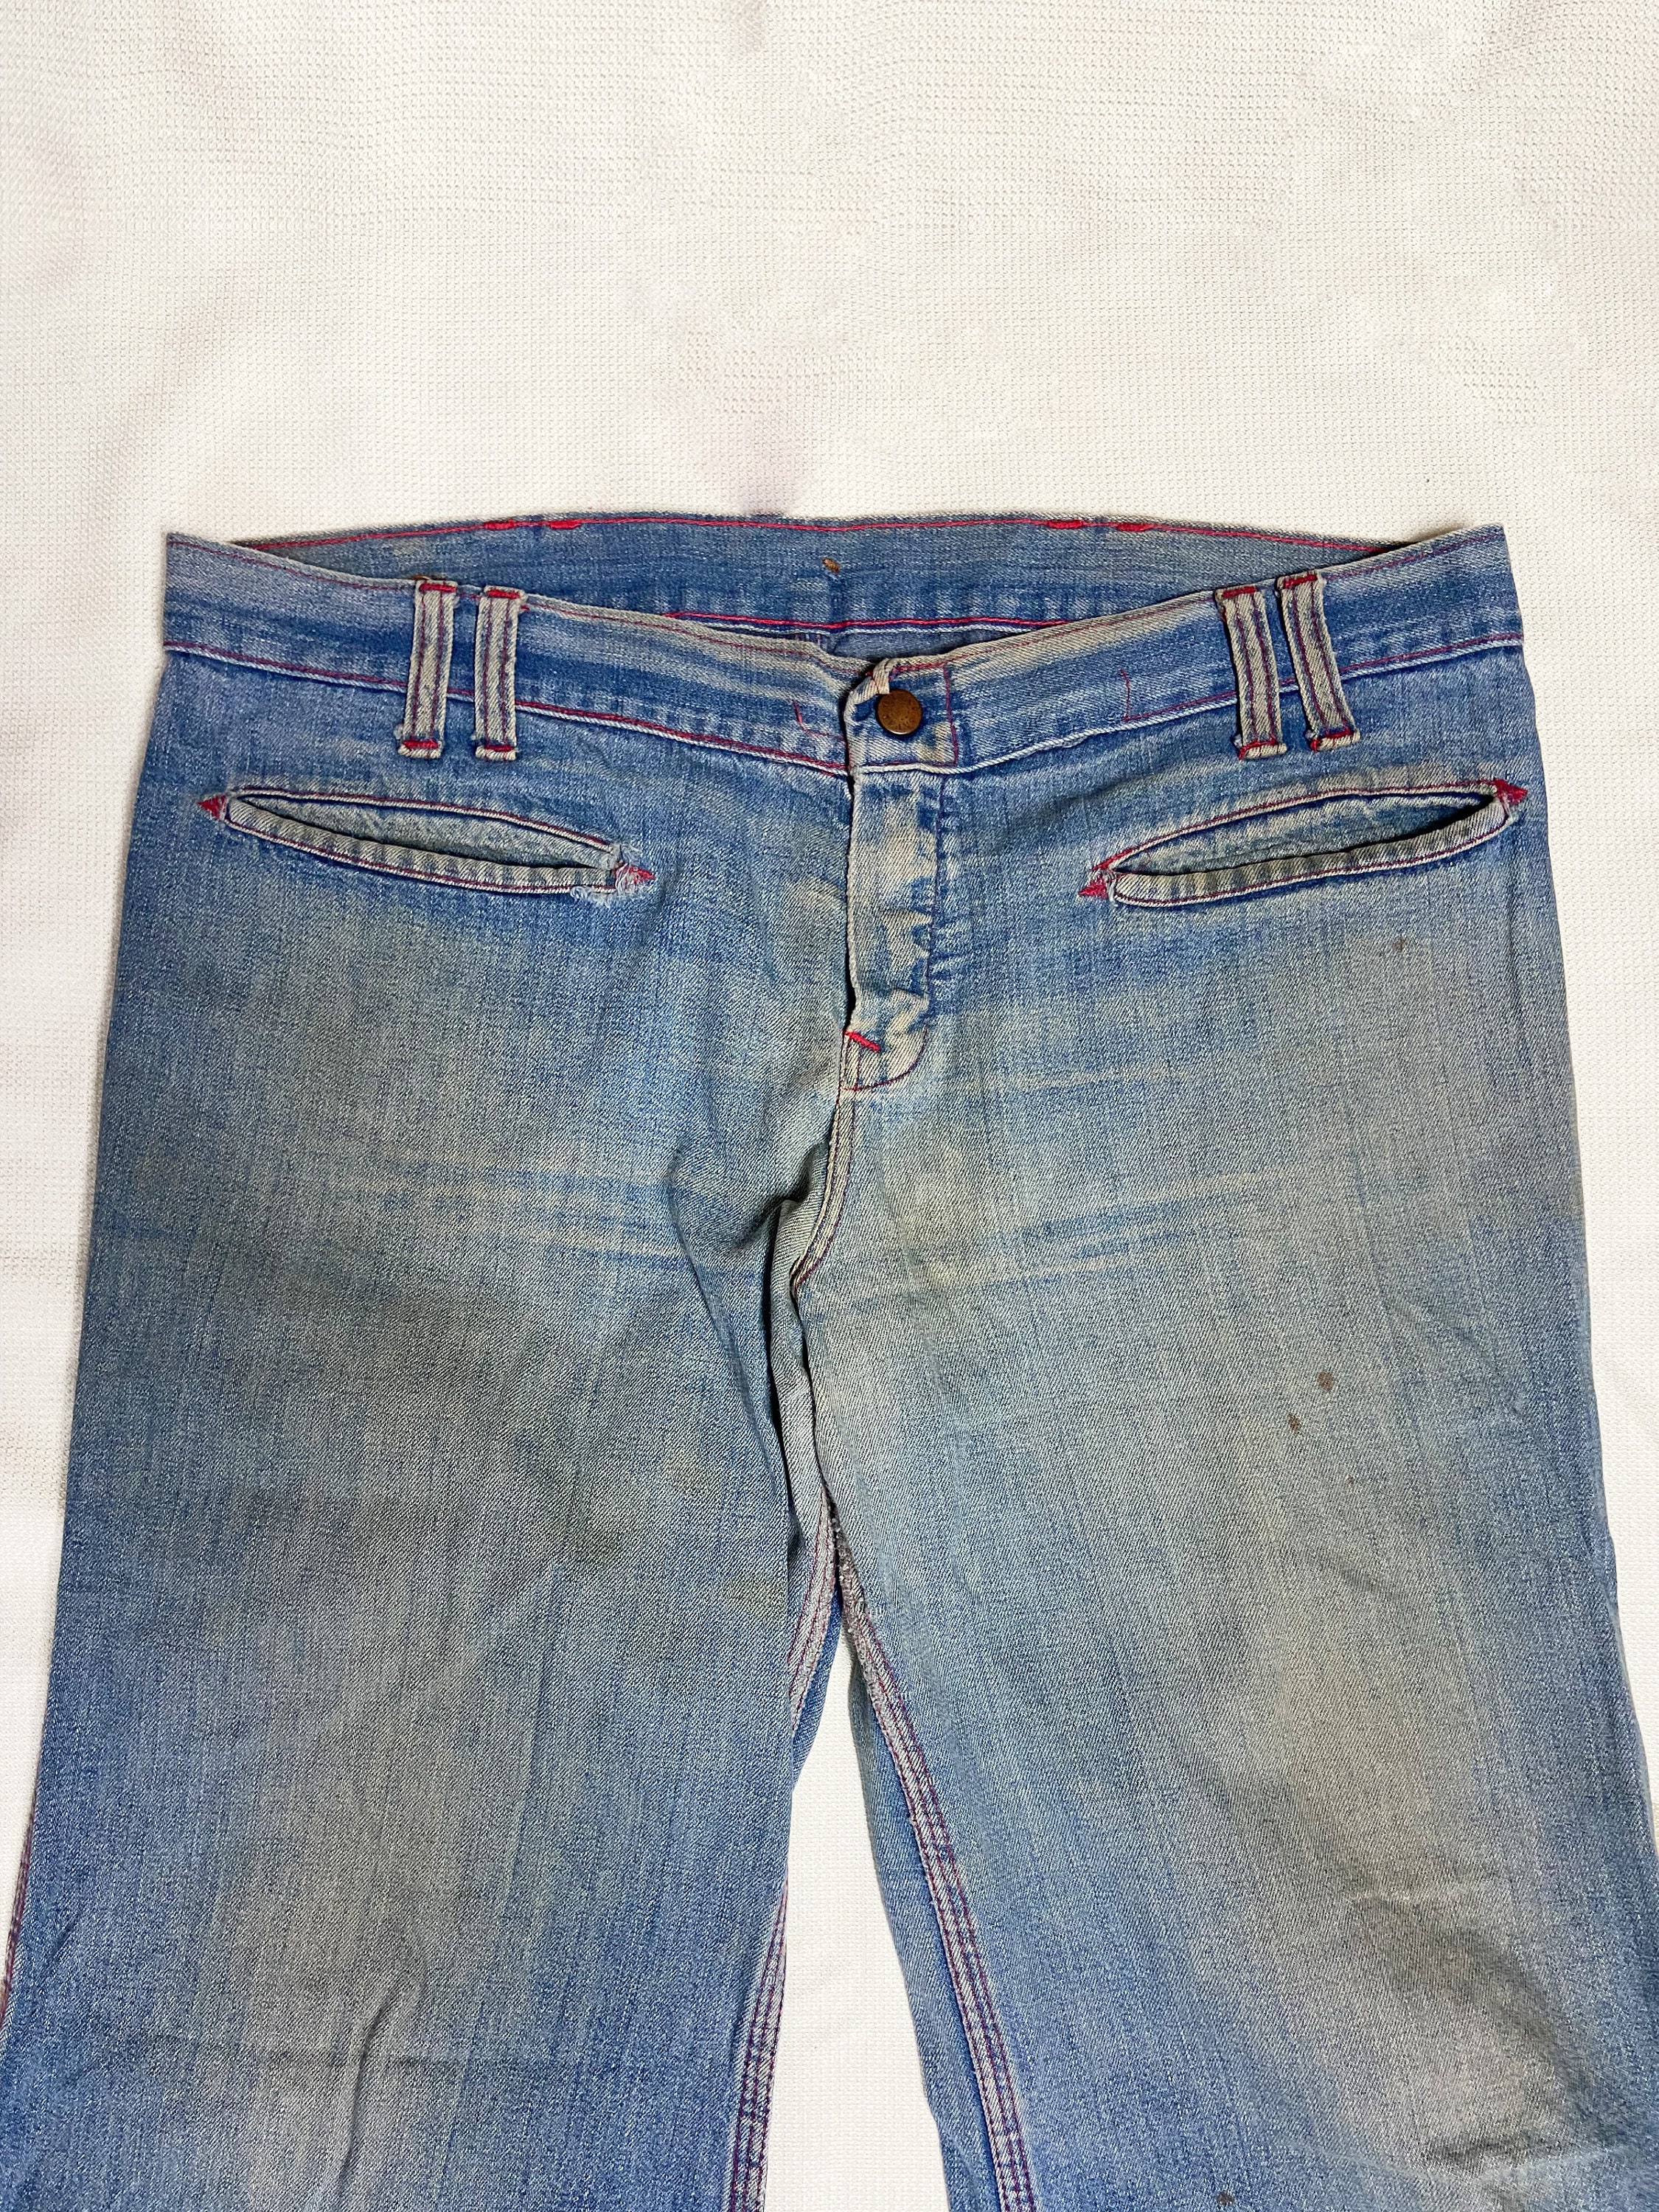 WMNS Ripped Hip Hugger High Waist Cut Tight Fit Blue Jeans / Blue